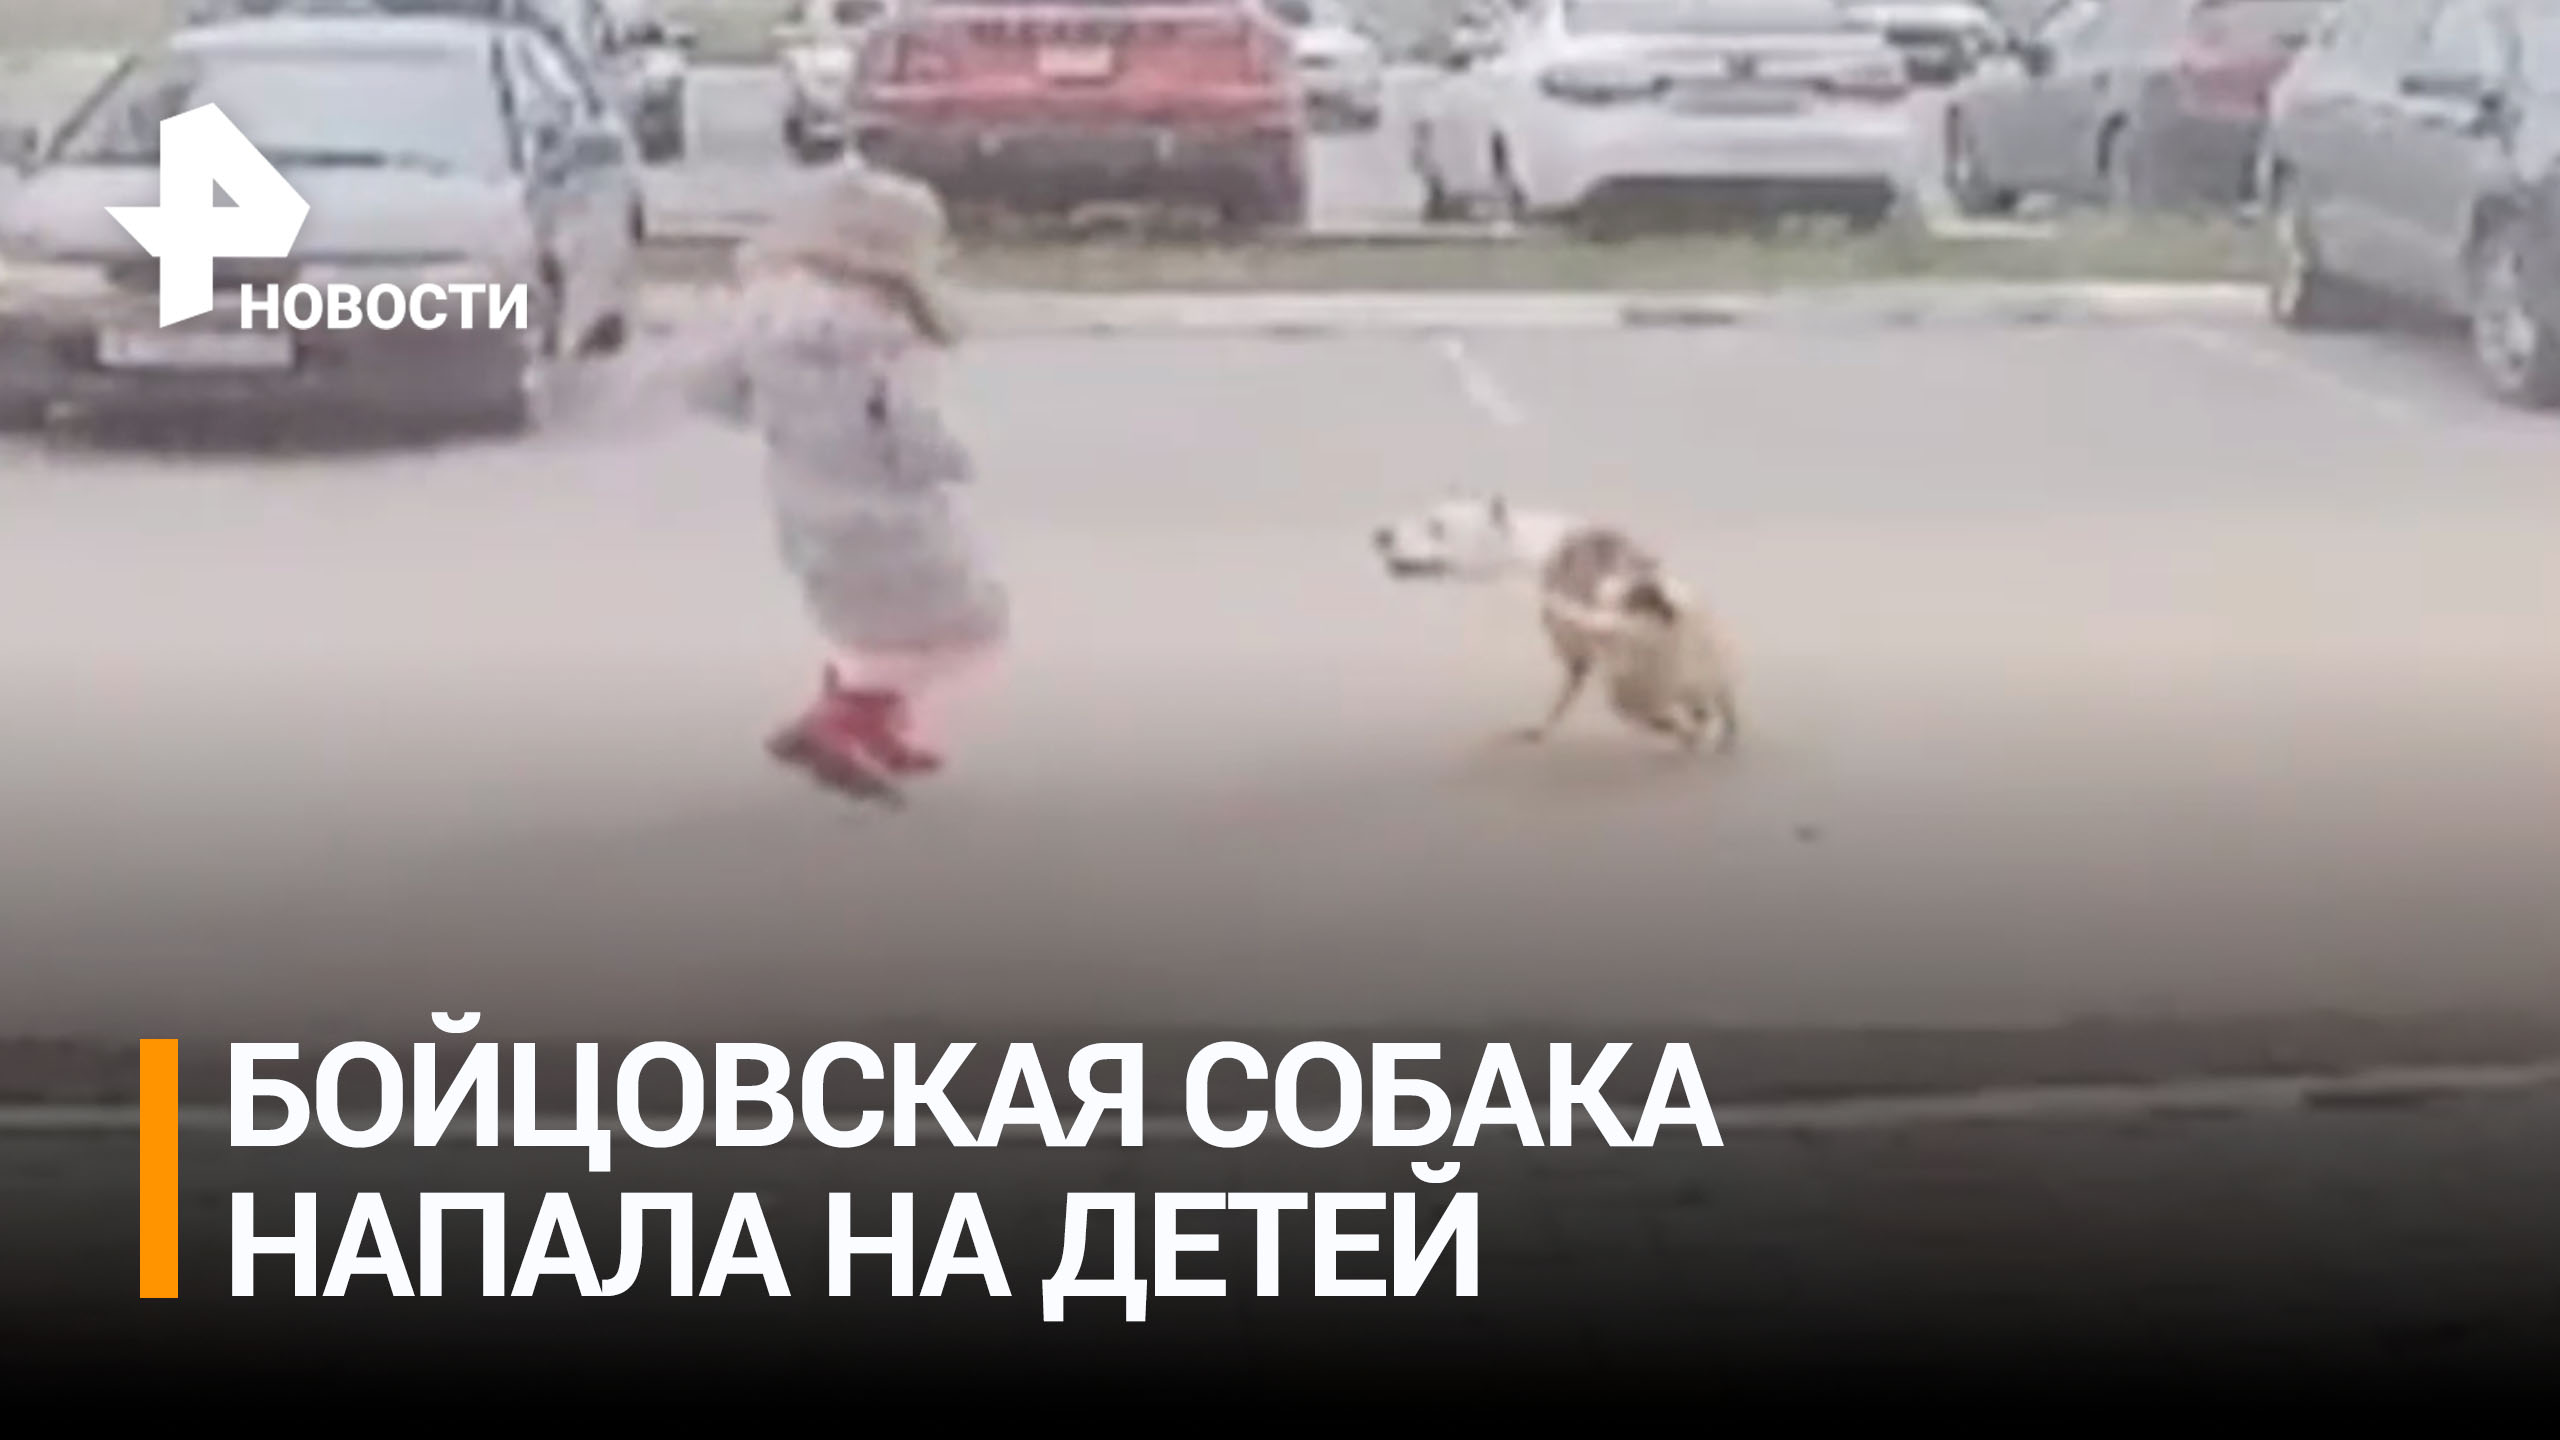 Бойцовская собака напала на двух детей в Калуге. Прокуратура взяла дело под контроль / РЕН Новости